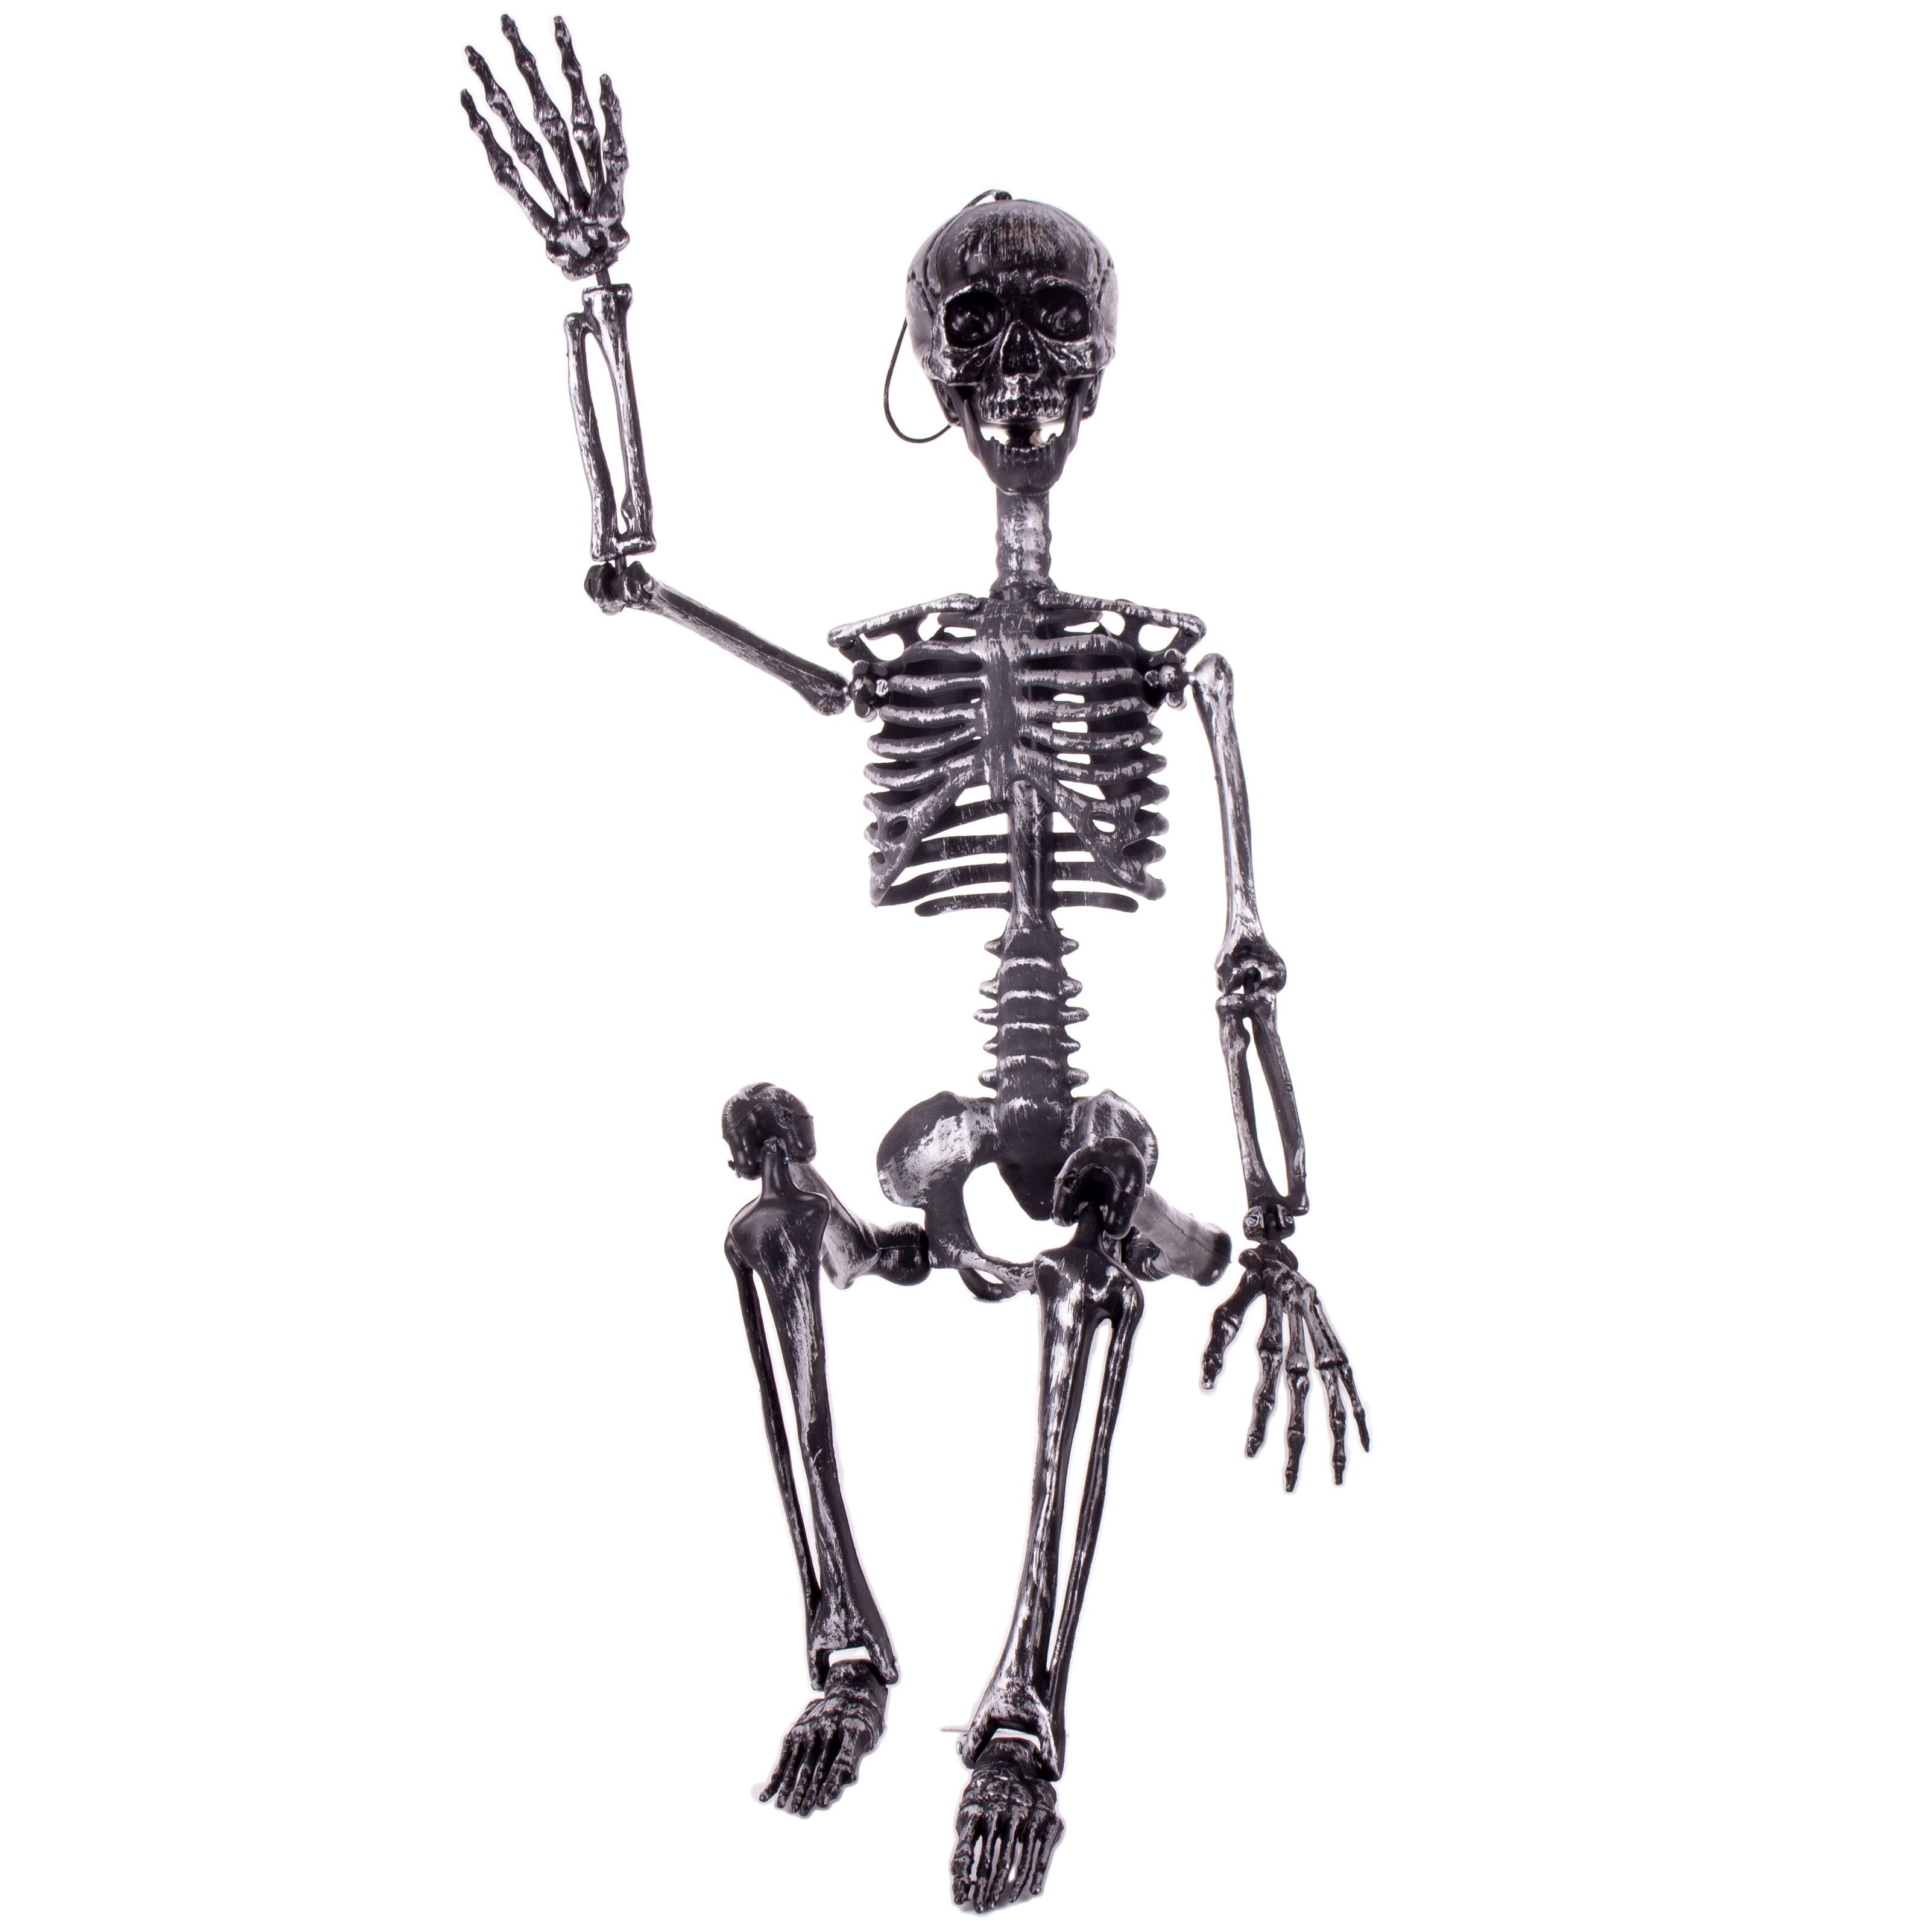 Skeleton Raven Prop Hollow Plastic Construction 11" Standing 5" Wide Halloween